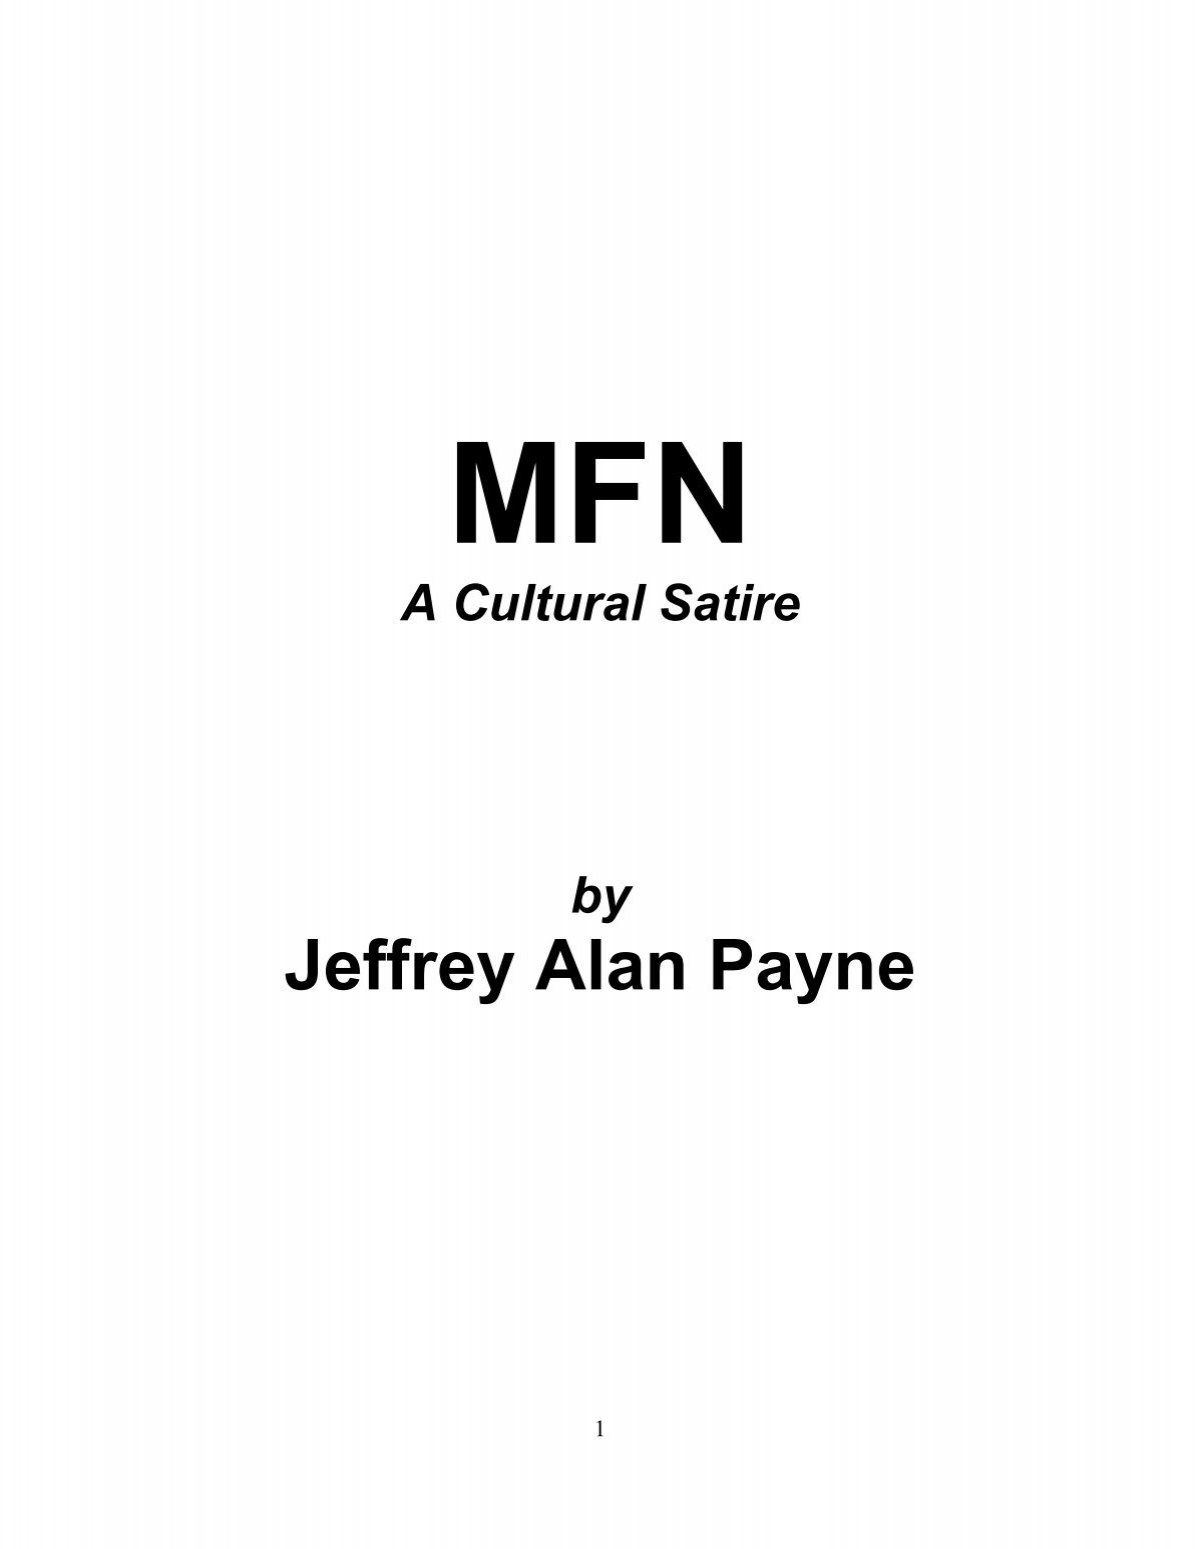 Jeffrey Alan Payne - Doczine